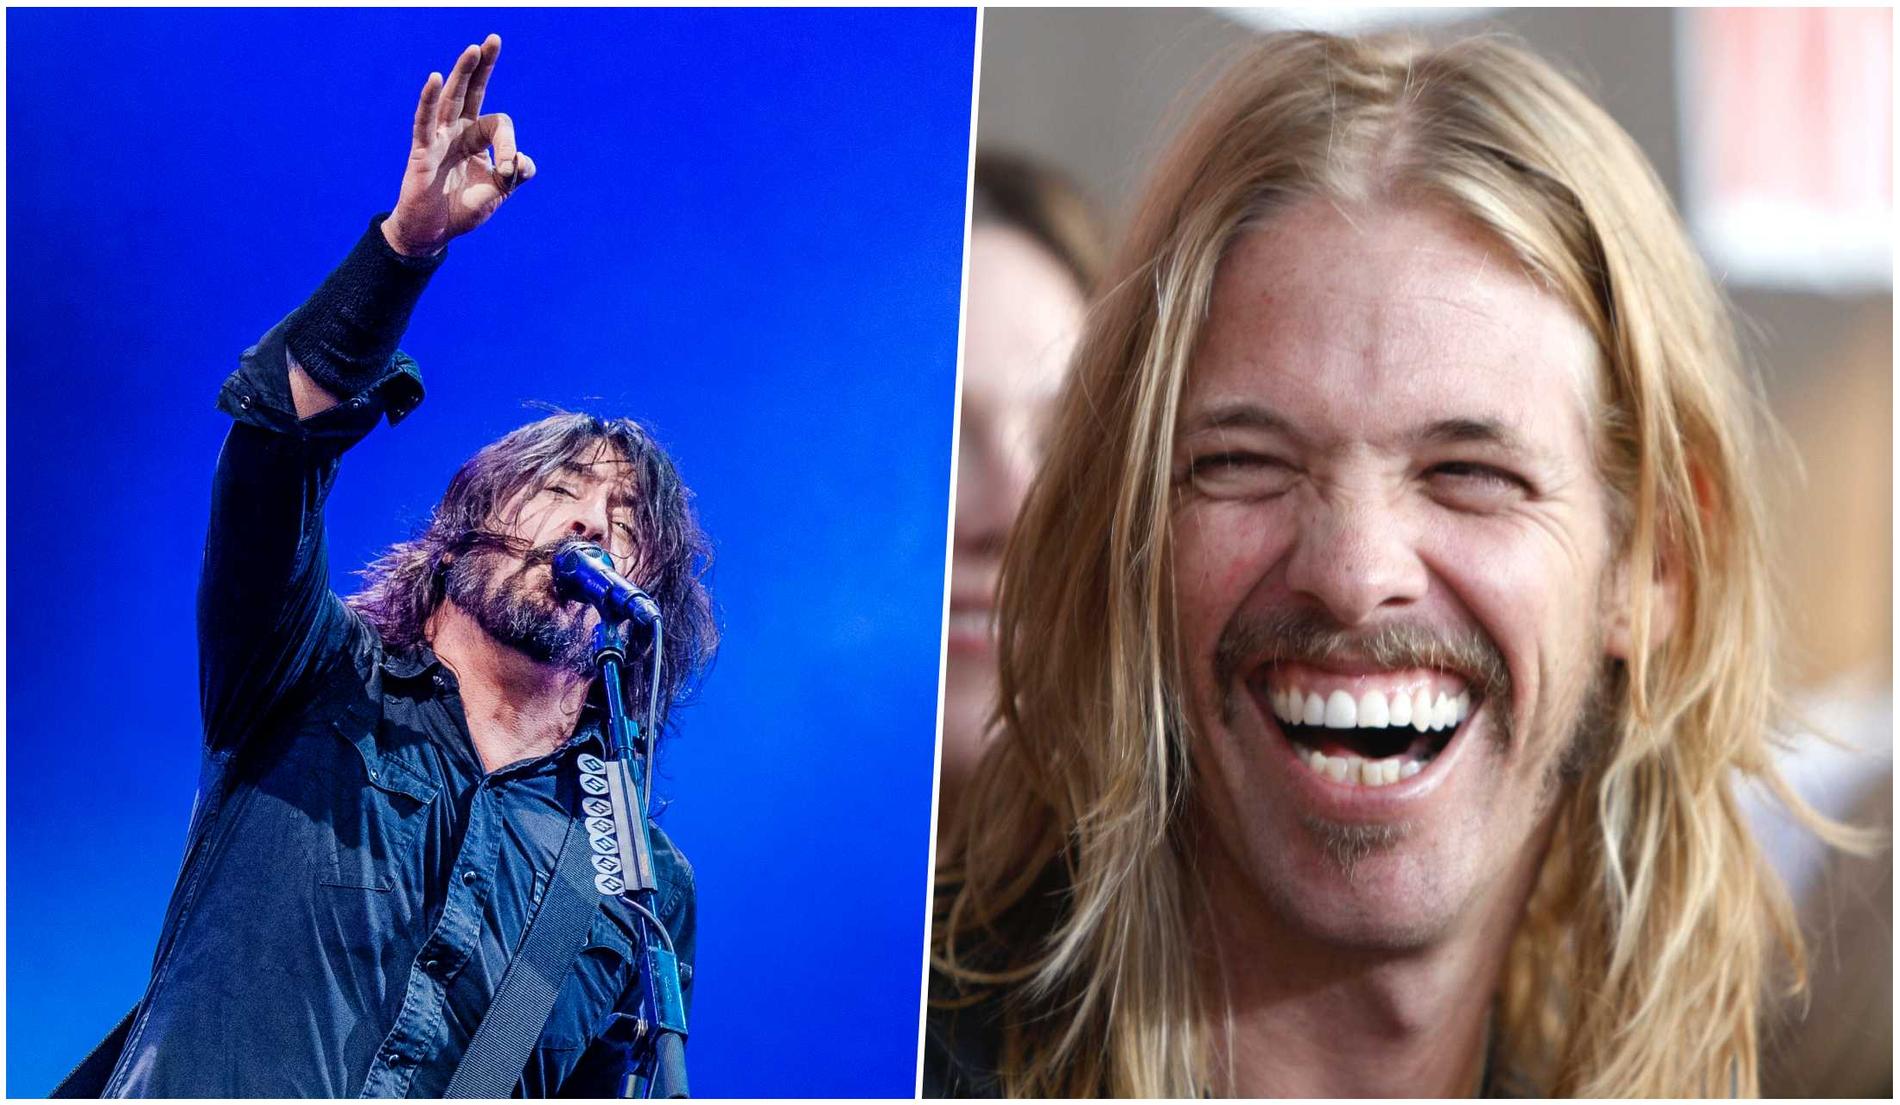 Drygt ett år efter trummisen Taylor Hawkins (till höger) död är Foo Fighters aktuella med ny musik. I juni släpps albumet ”But here we are”.